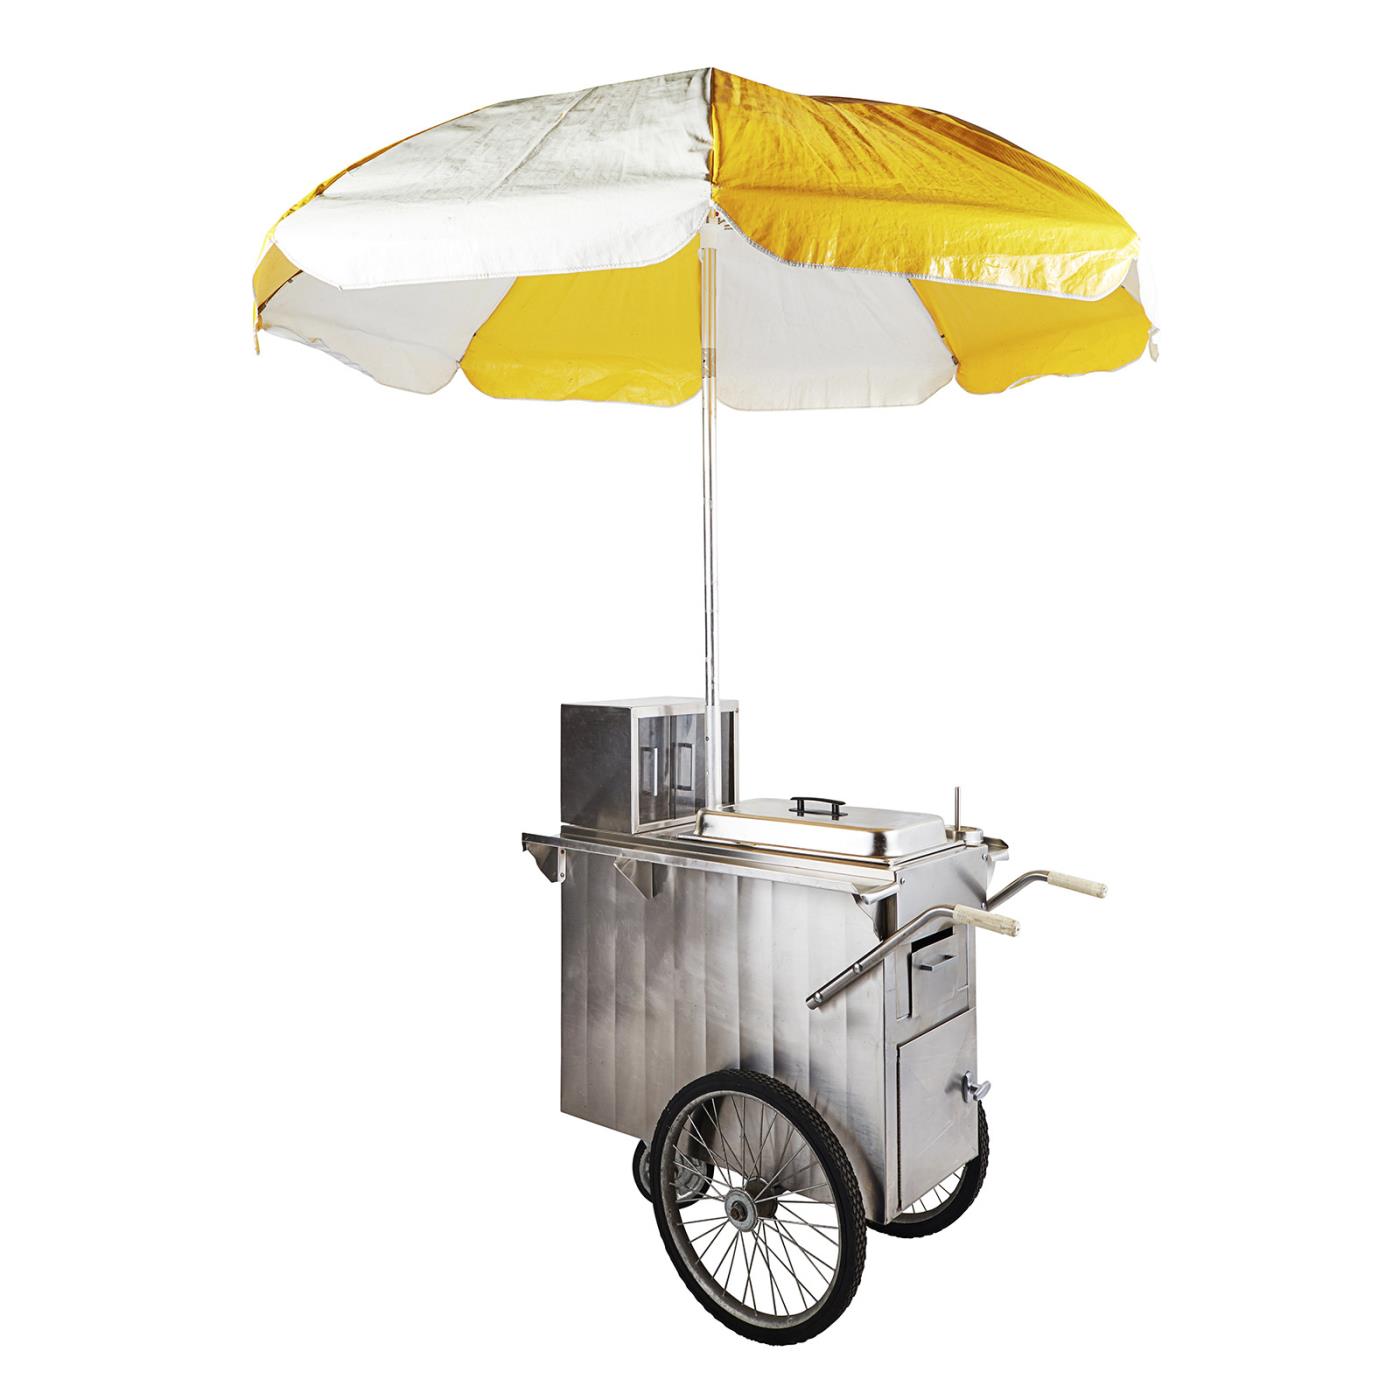 Hot Dog Cart Umbrella - Yellow & White